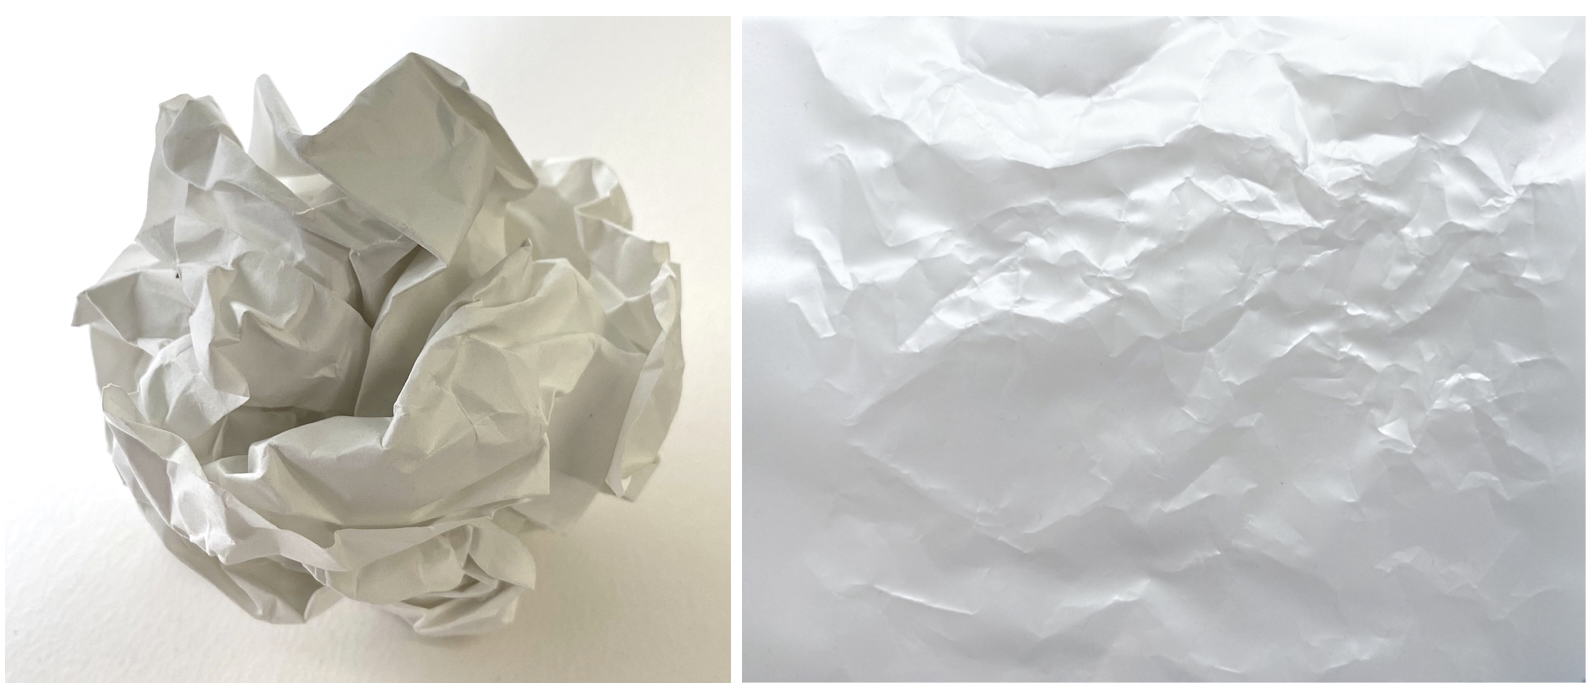 図6: くしゃくしゃに丸めた紙。広げてみると折り目とそうでない部分が混在しているのがわかる。折り目は塑性変形しているが、そうでない部分は依然としてフックの法則が成り立っているのは注目に値する。